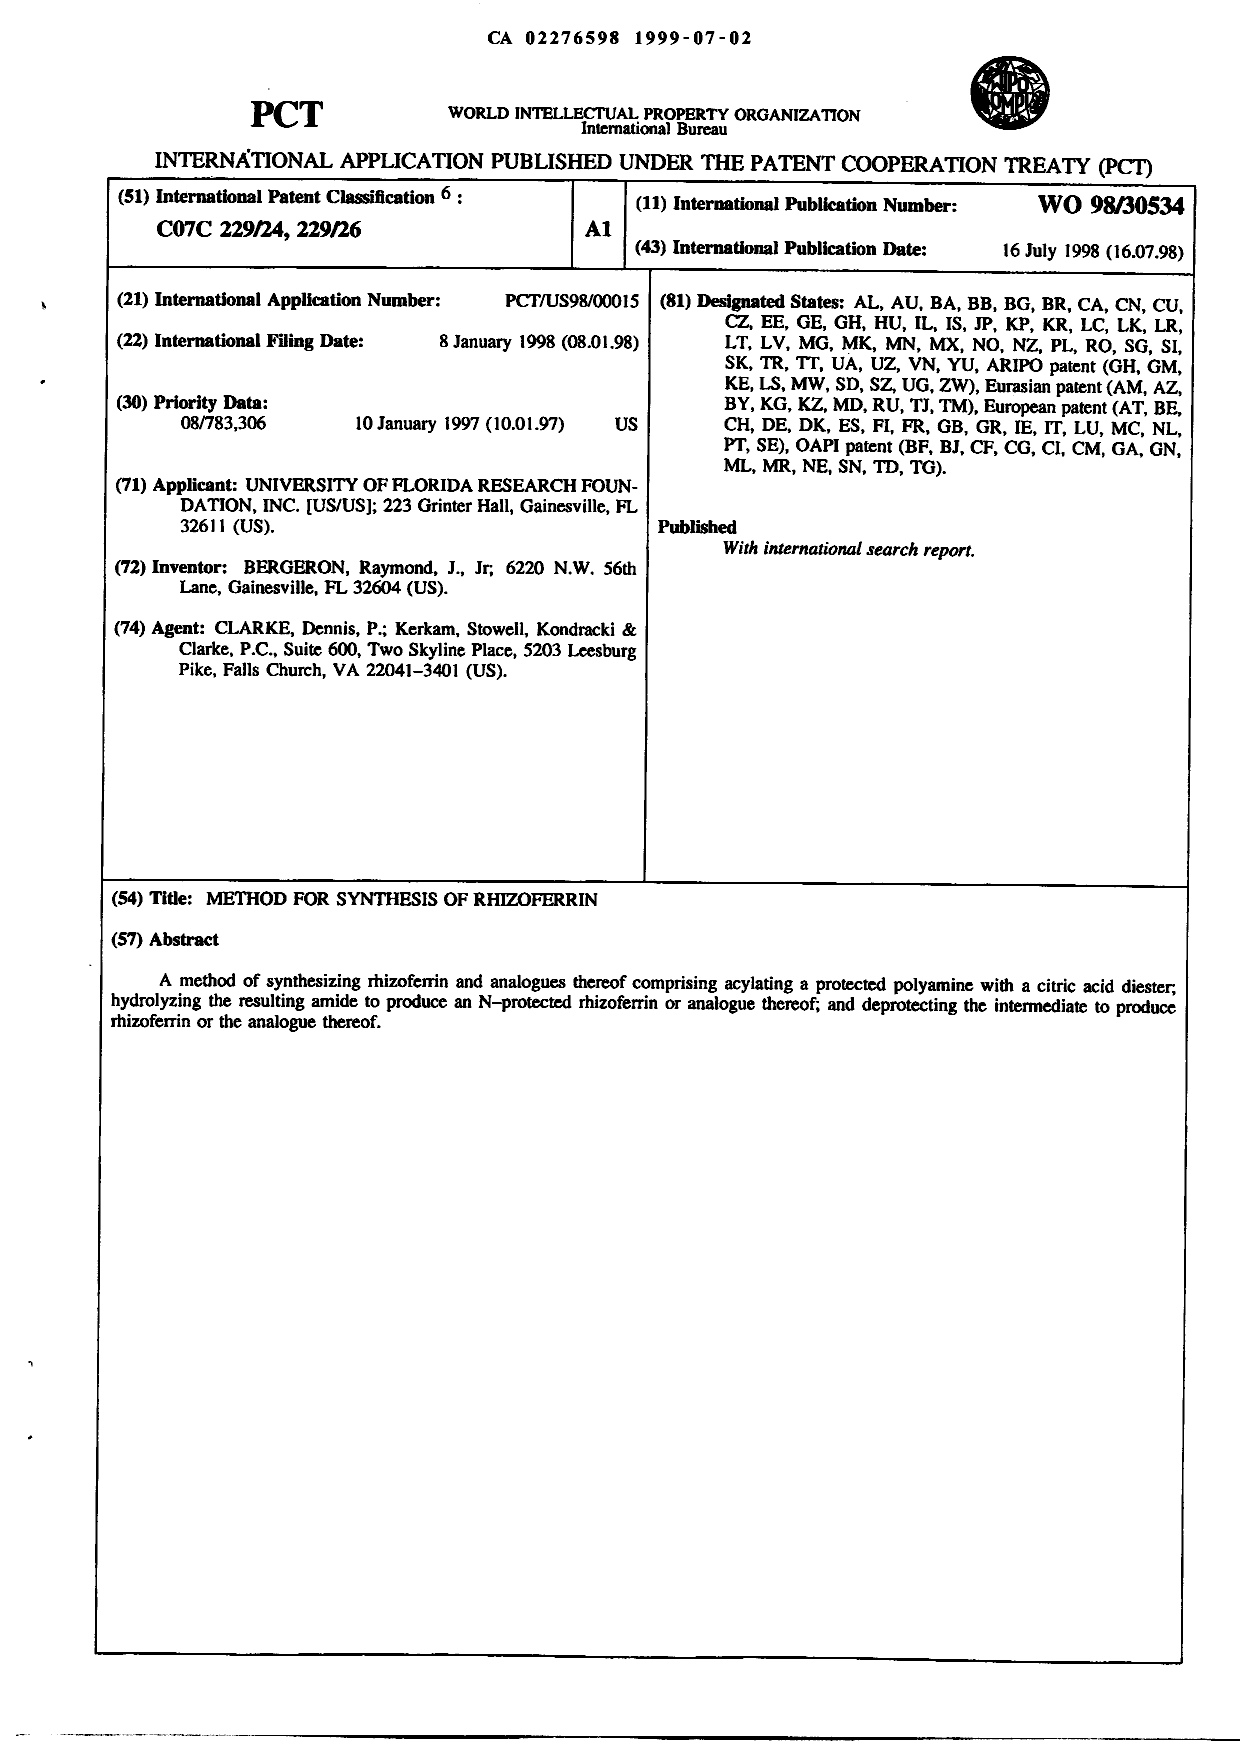 Document de brevet canadien 2276598. Abrégé 19990702. Image 1 de 1